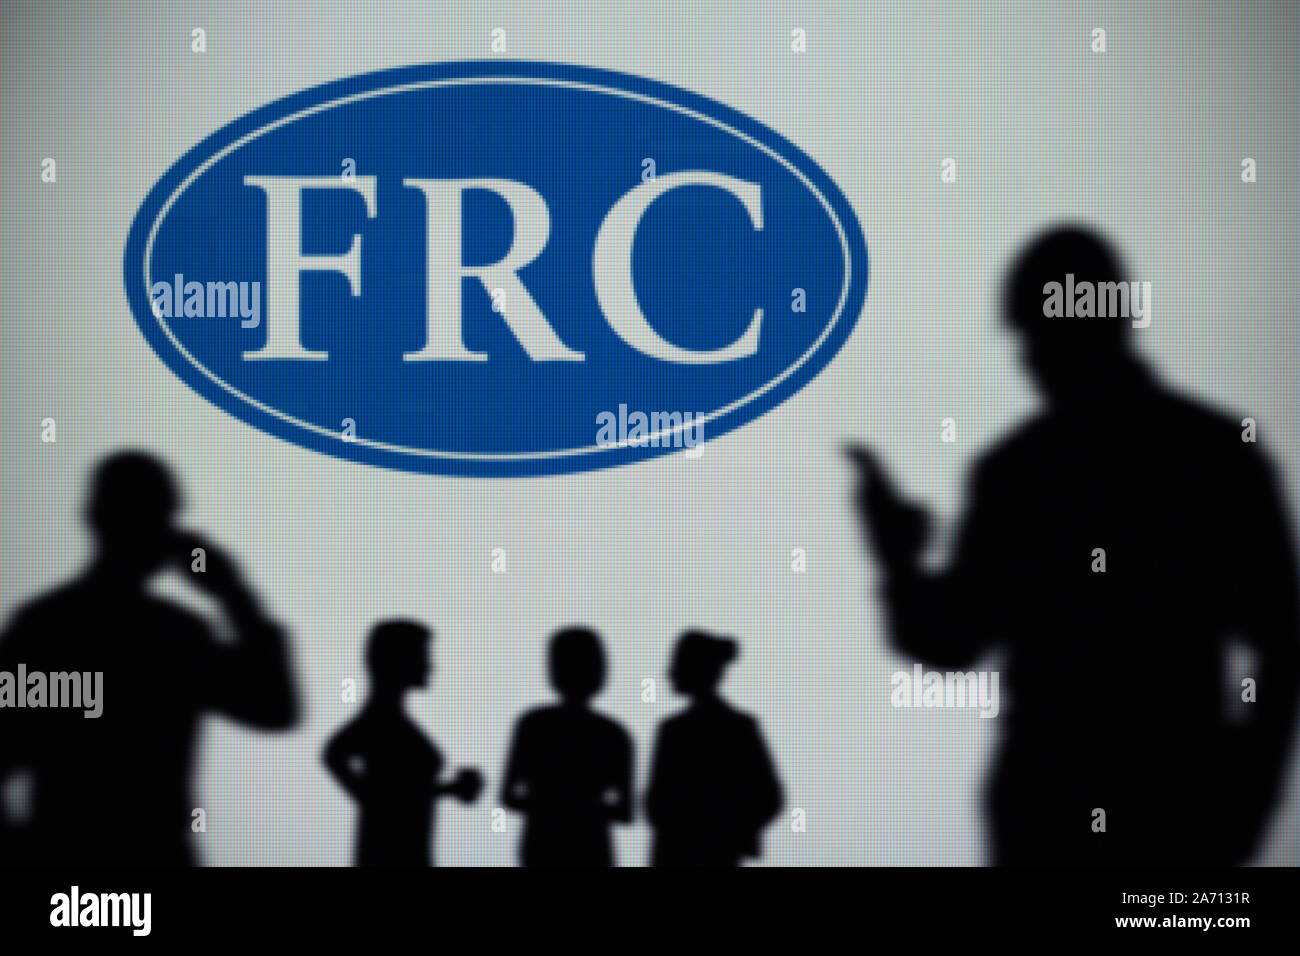 El FRC (Consejo de Informes Financieros logo es visto en una pantalla LED en el fondo mientras una silueta persona utiliza un smartphone (uso Editorial solamente) Foto de stock